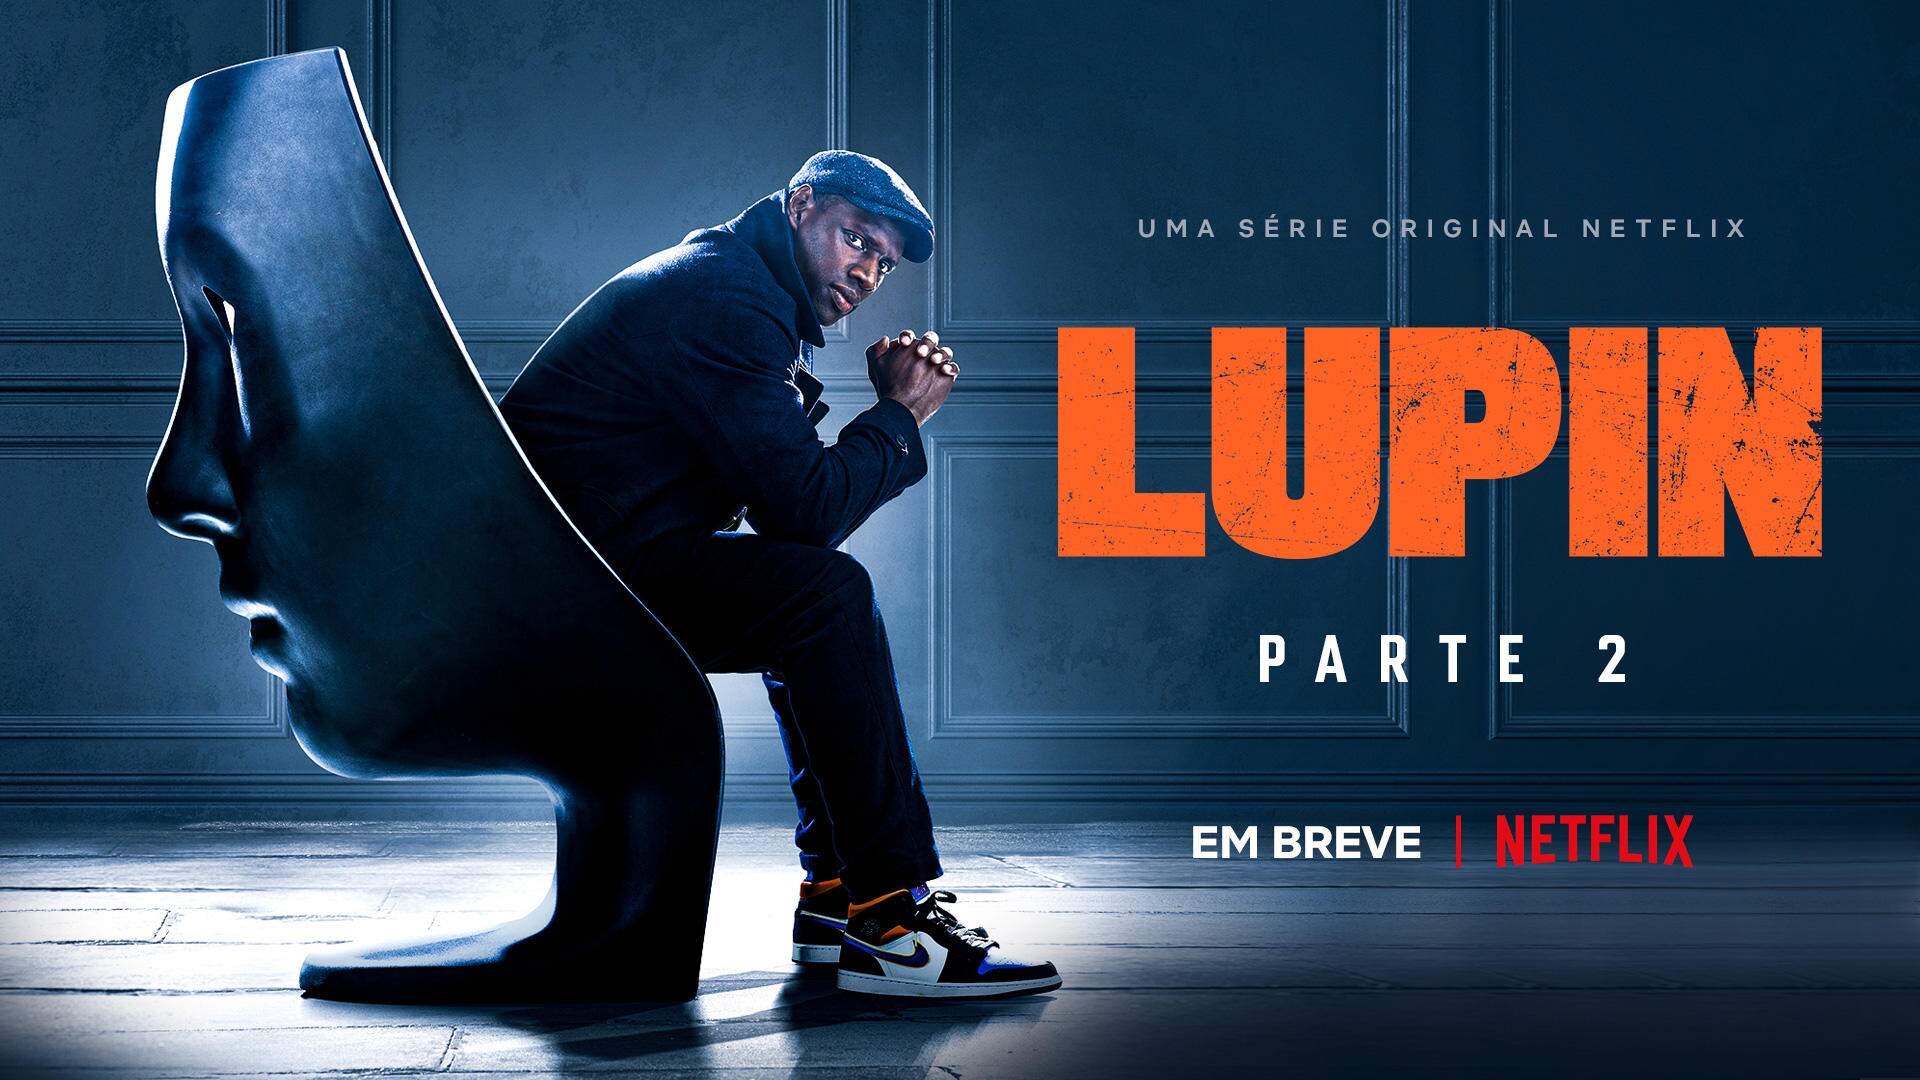 'Lupin' ganhará uma segunda parte ainda em 2021